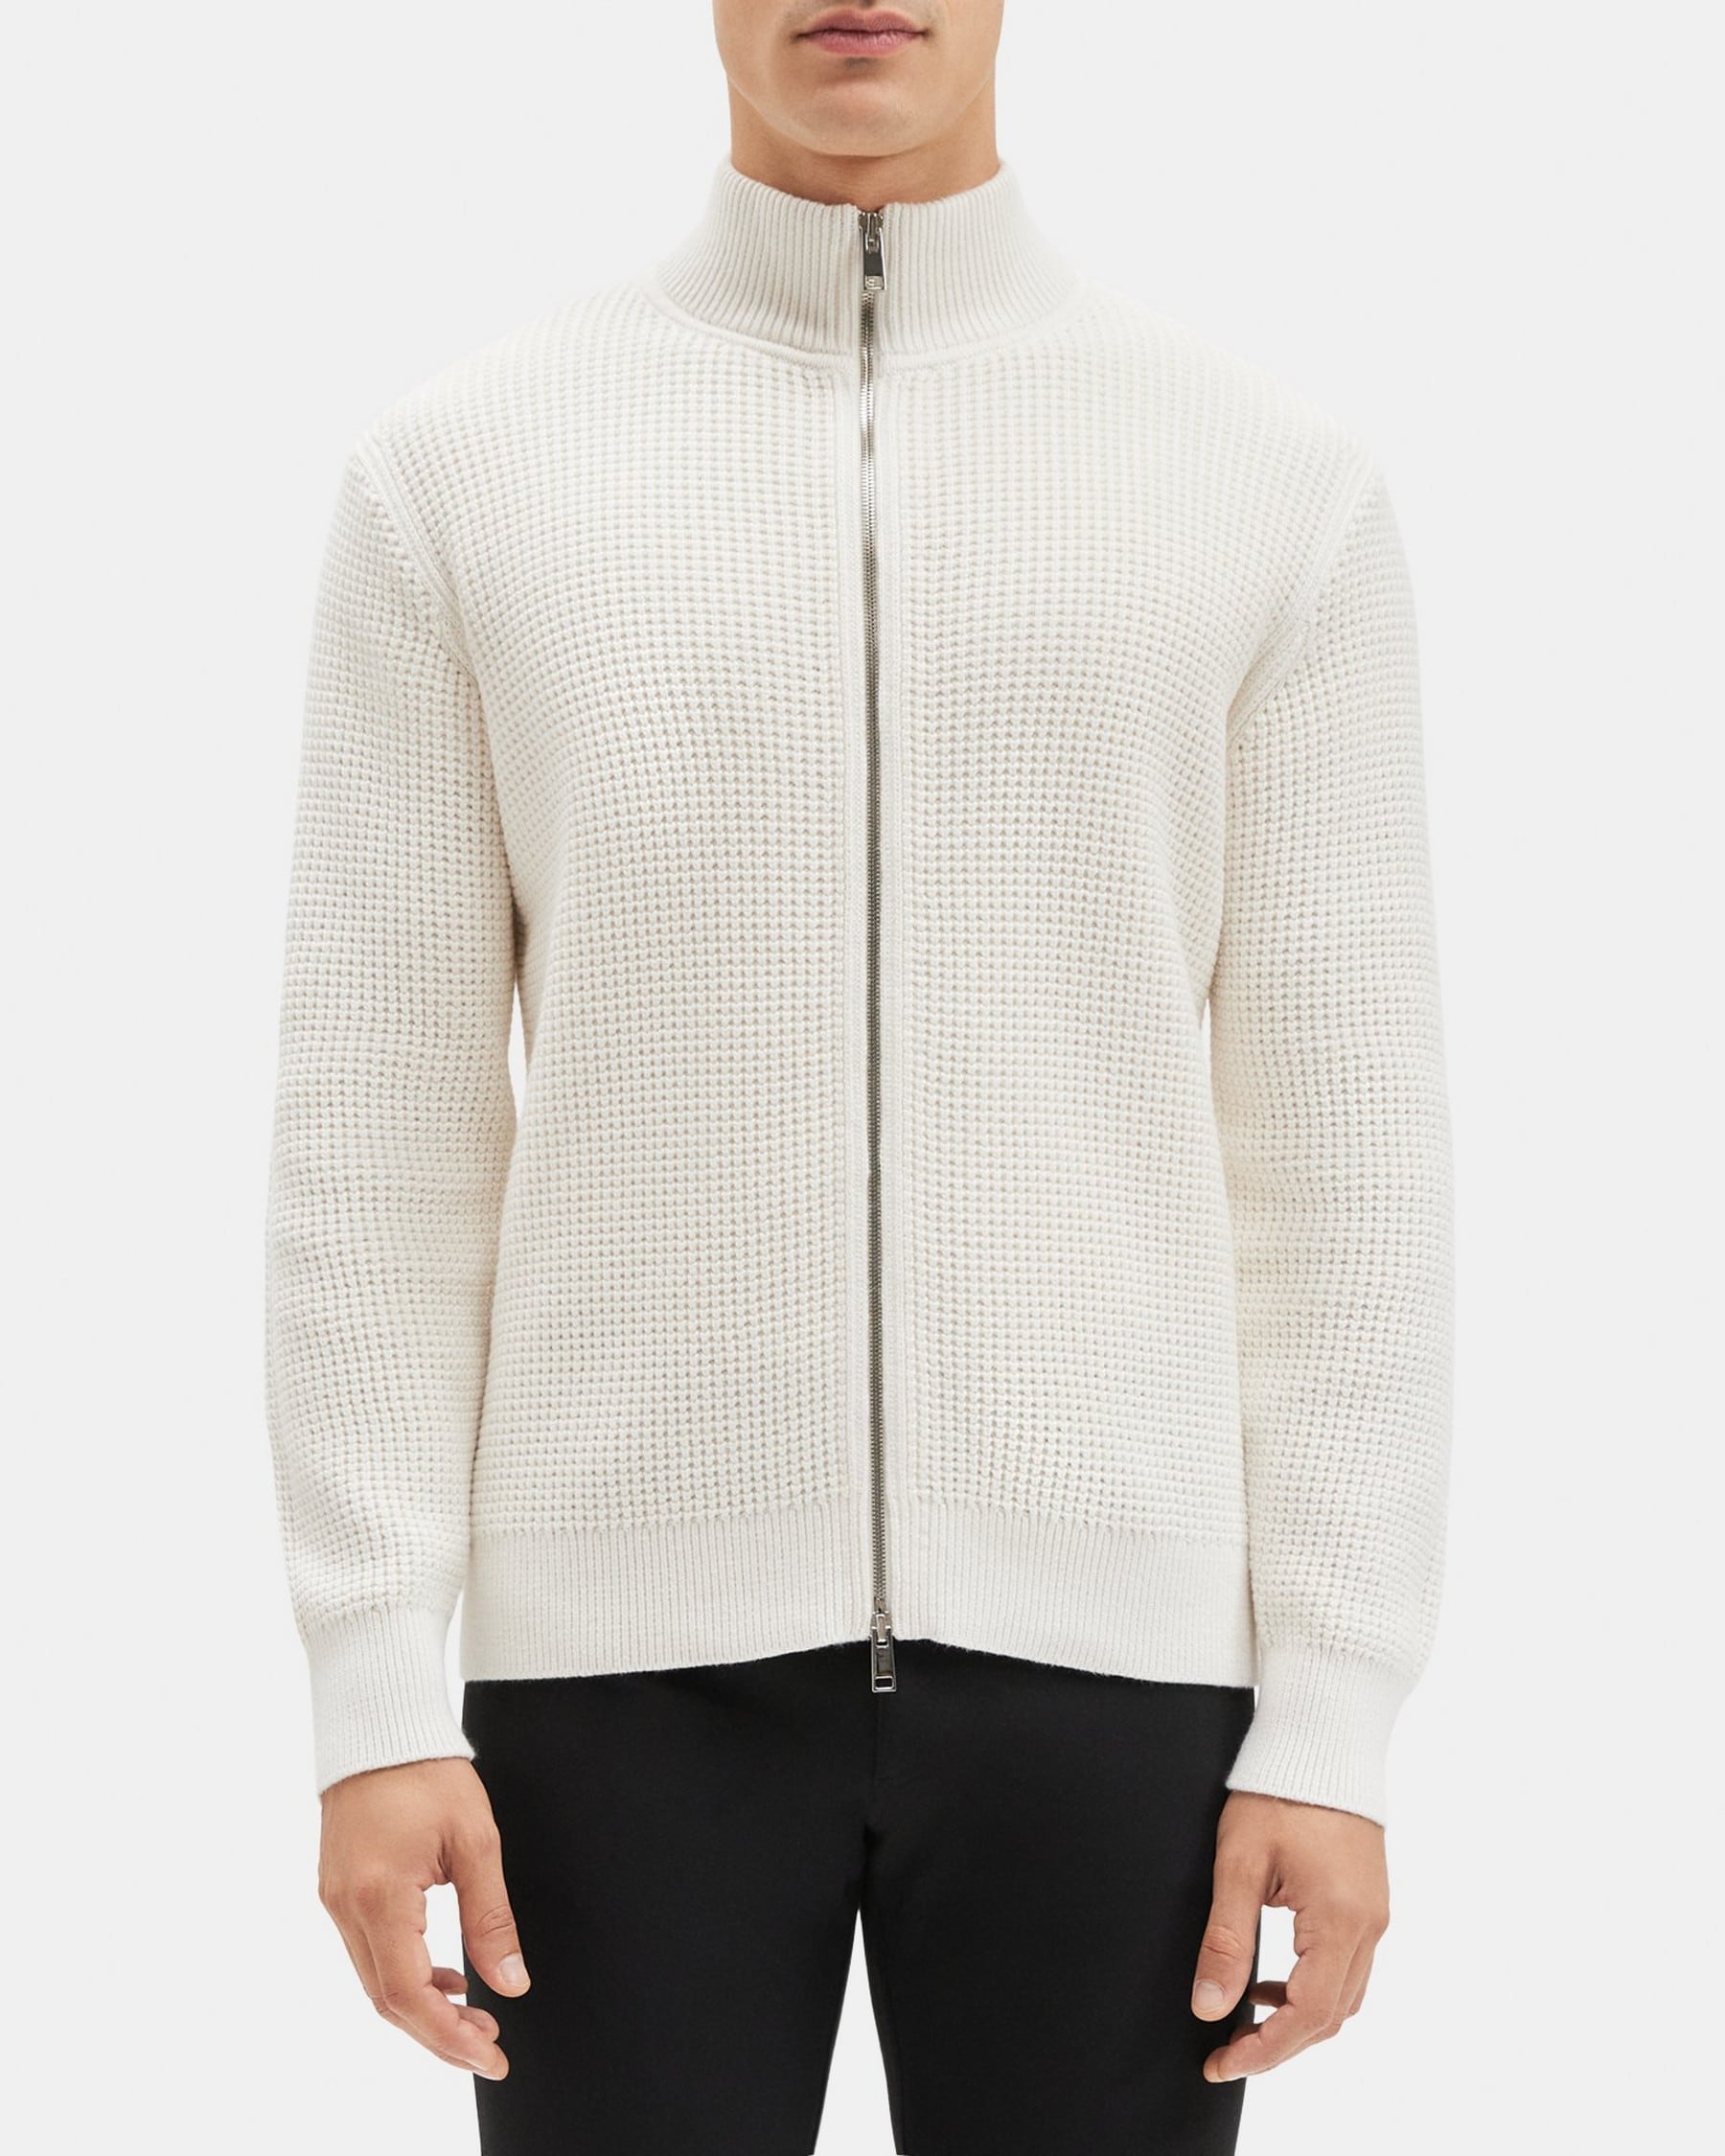 띠어리 Theory Full-Zip Sweater in Waffle Cotton-Cashmere,WHITE/BALTIC